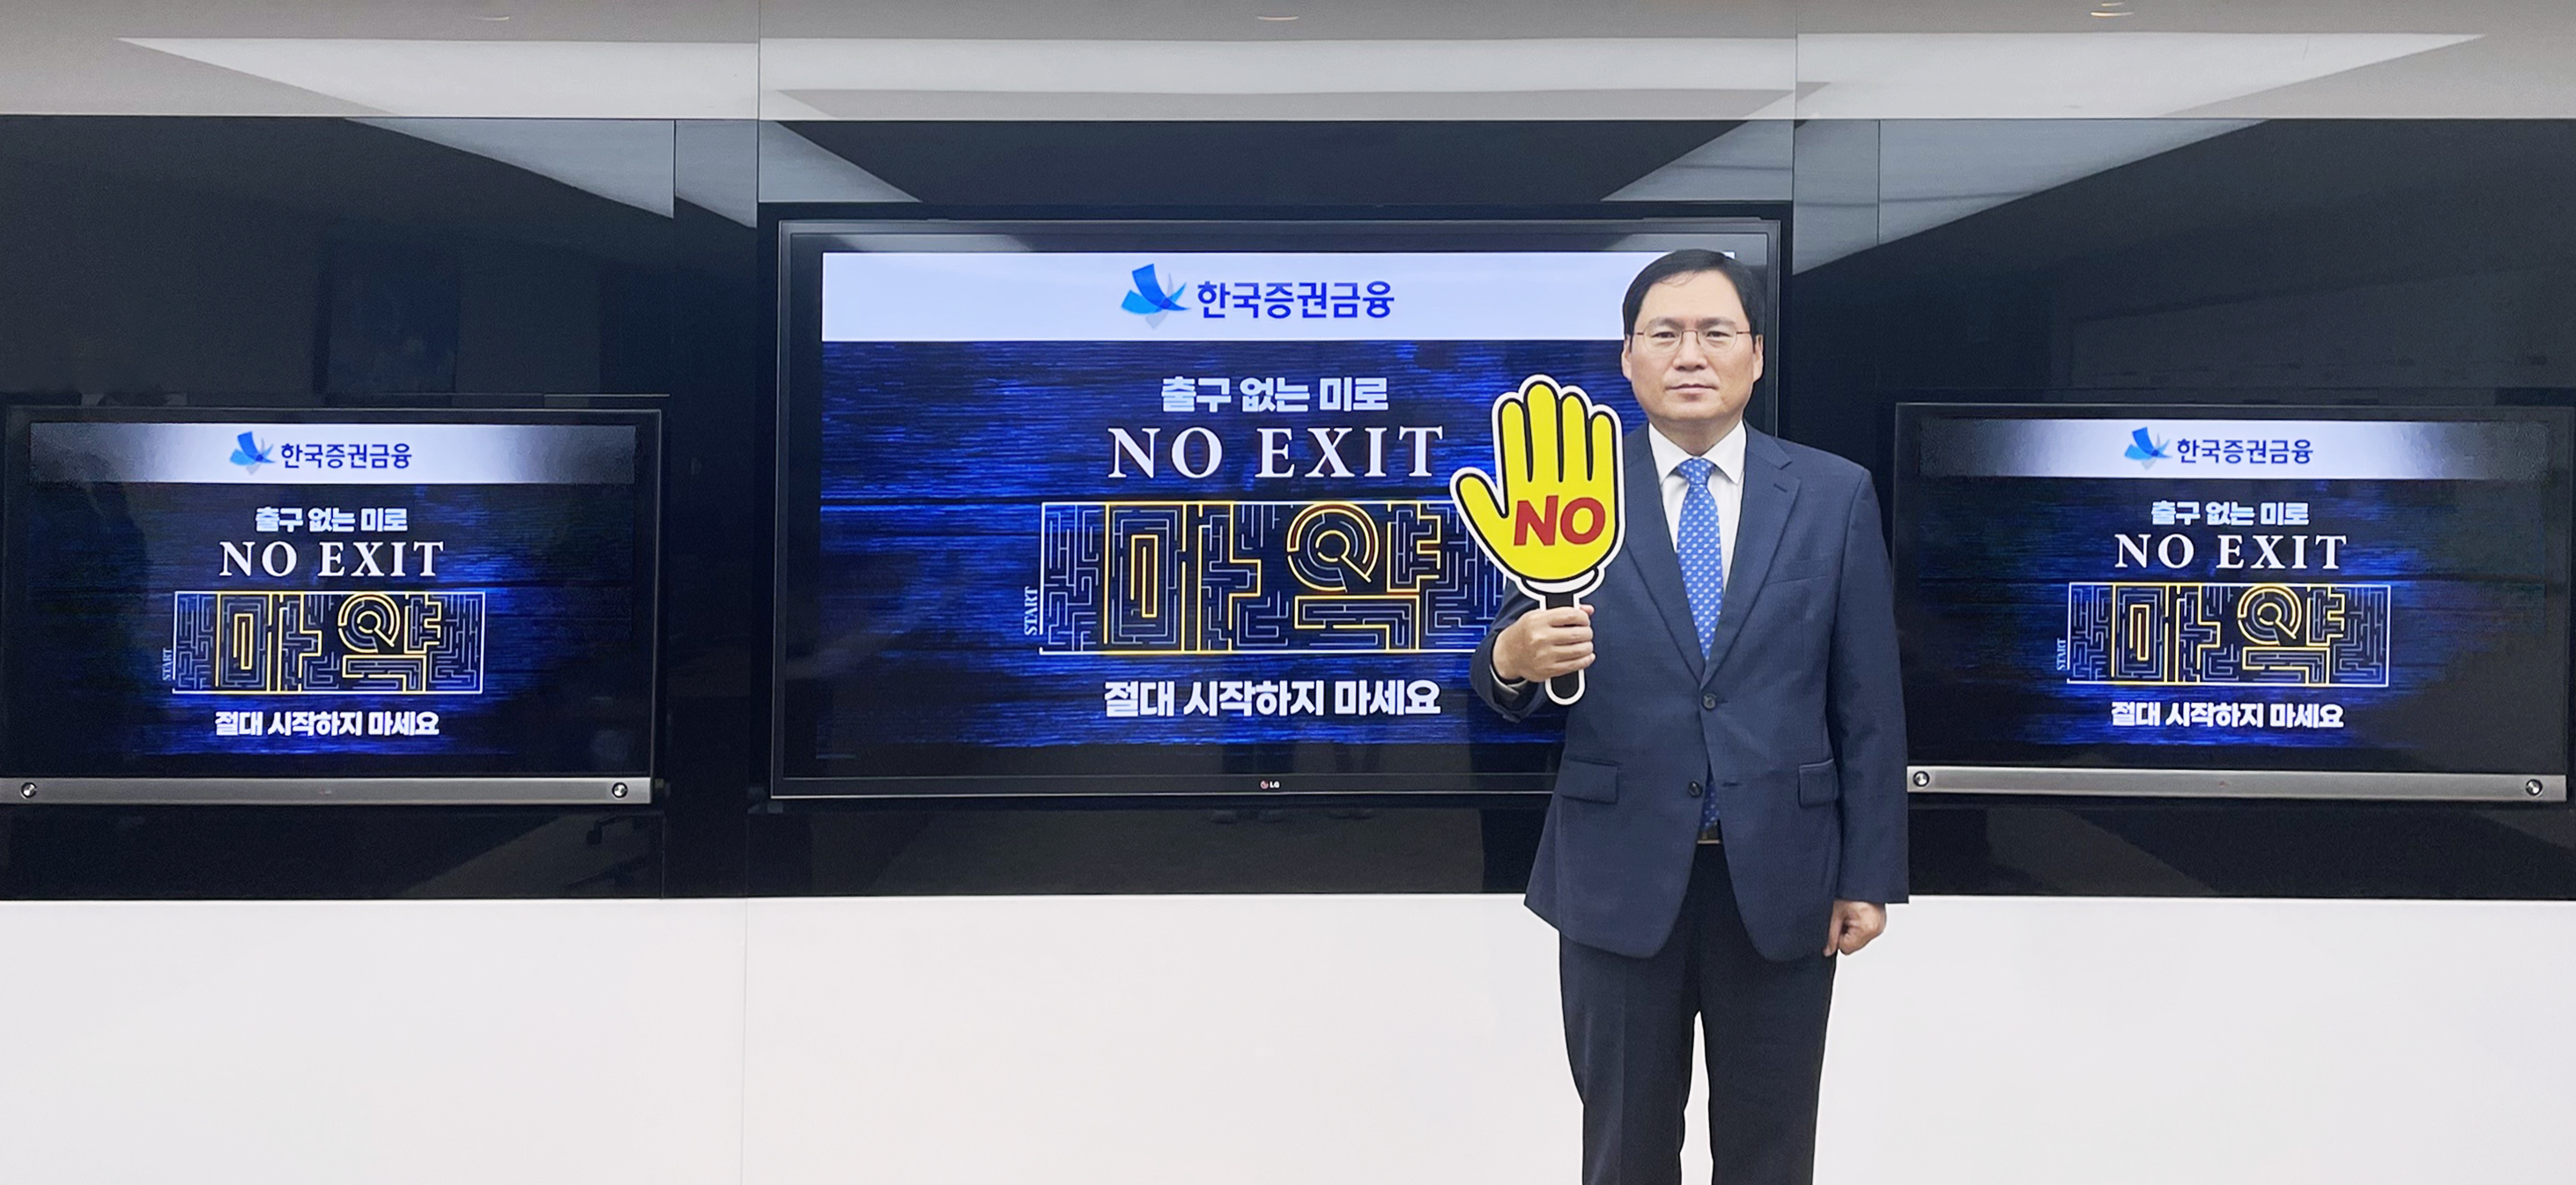 '노엑시트(NO EXIT) 캠페인' 동참